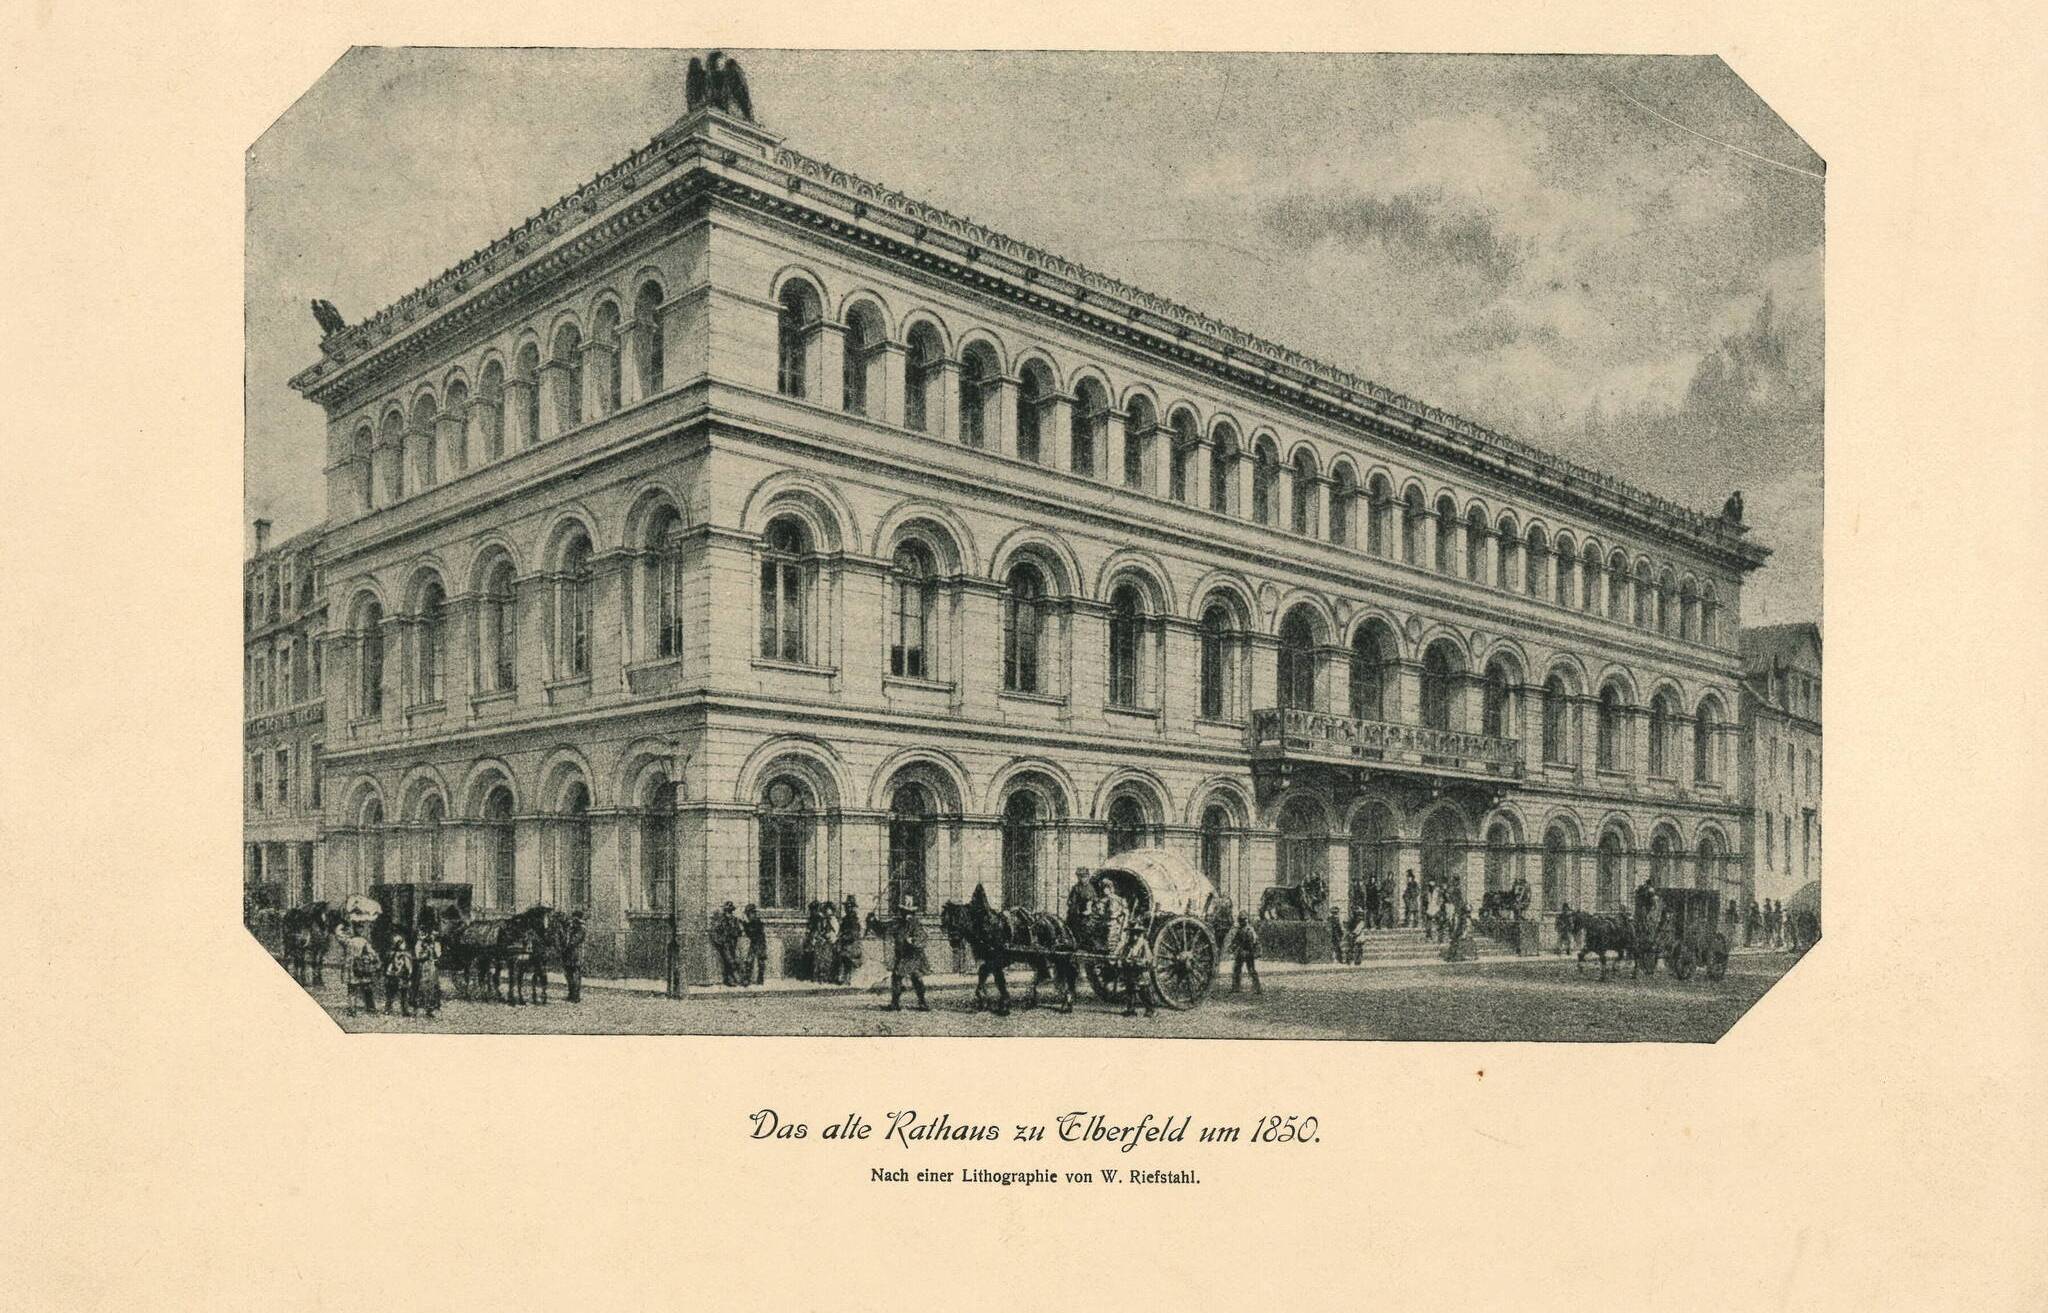  Lithografie des Museumsbaus (ehemals das Rathaus Elberfeld) von 1850. 